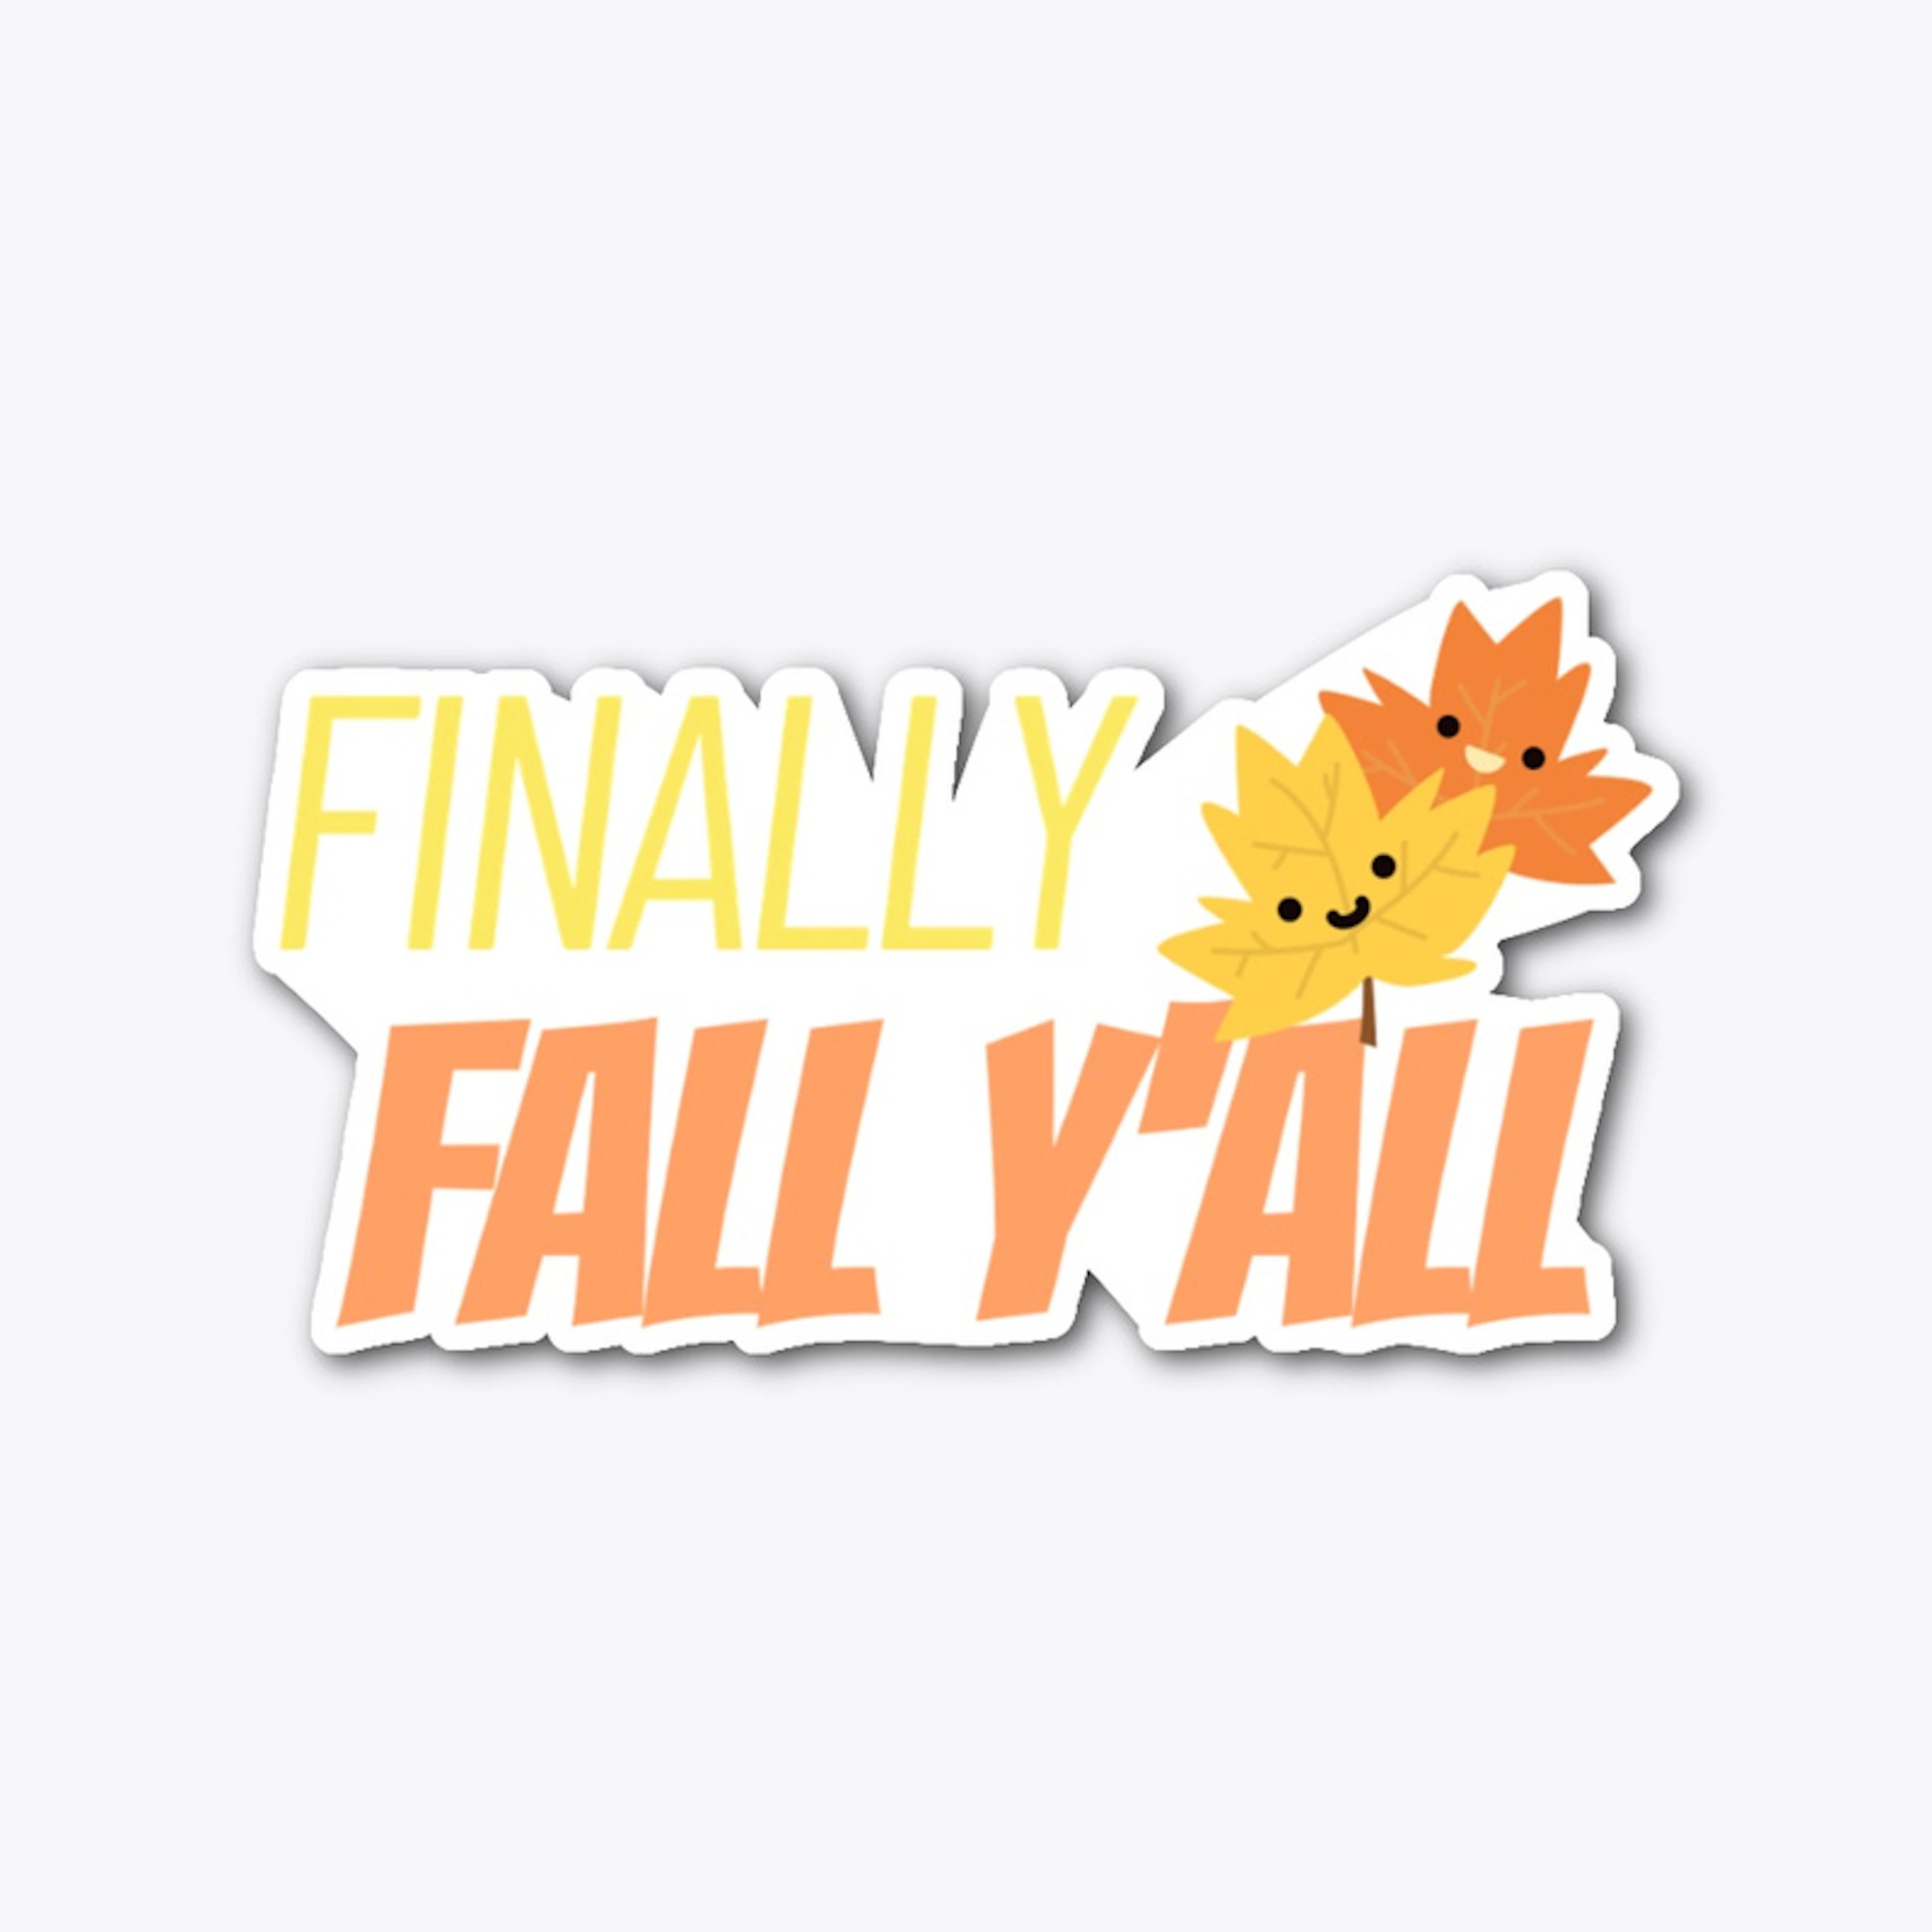 Finally fall y'all